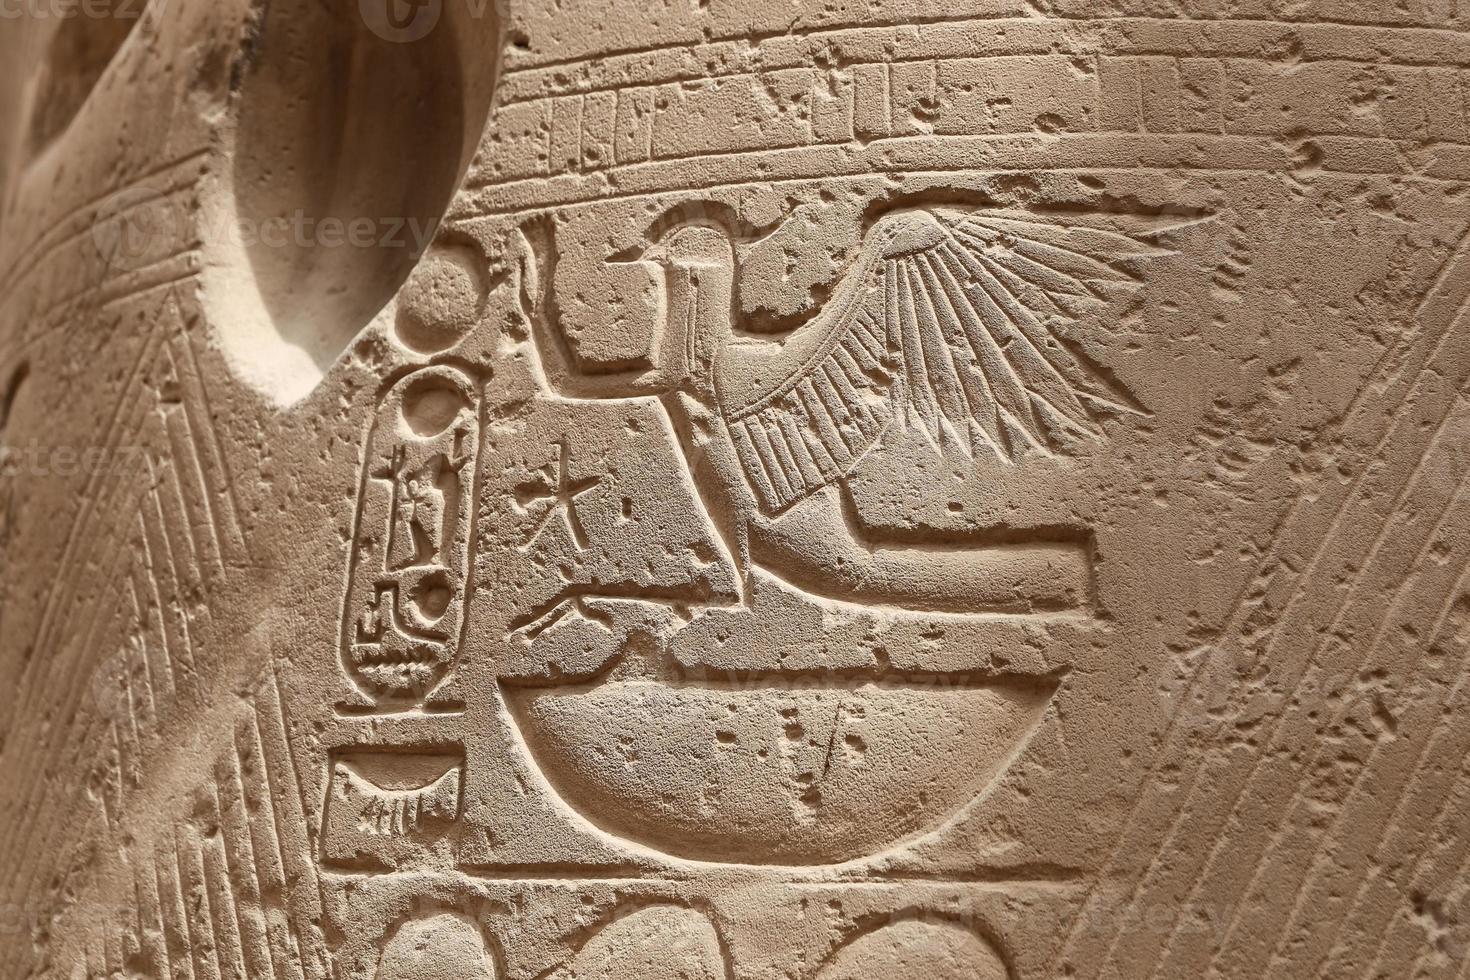 Egyptische hiërogliefen in de tempel van luxor, luxor, egypte foto